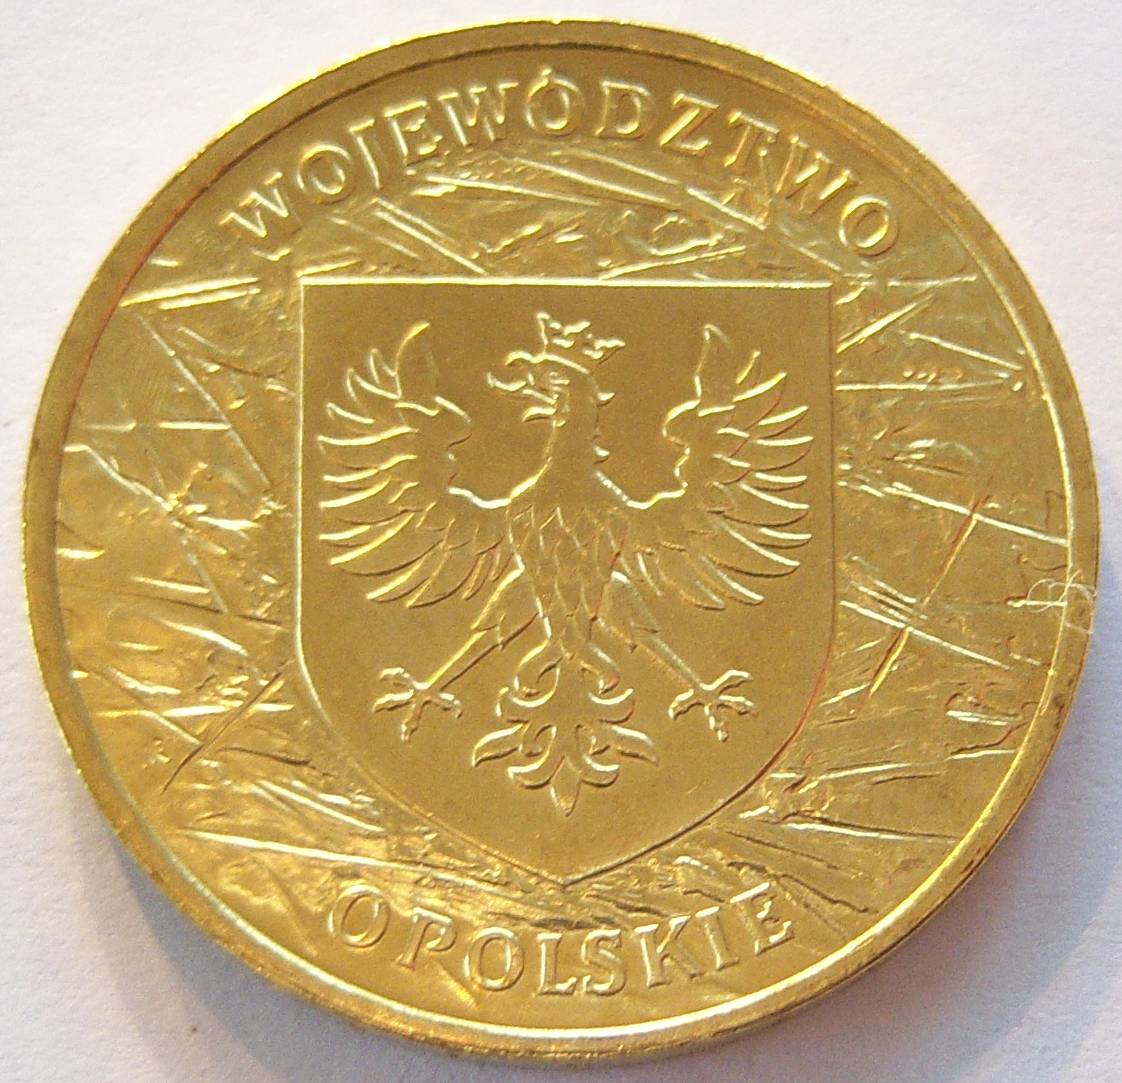  Polen 2 Zloty Zlote 2004 Wojewodztwo Opolskie   